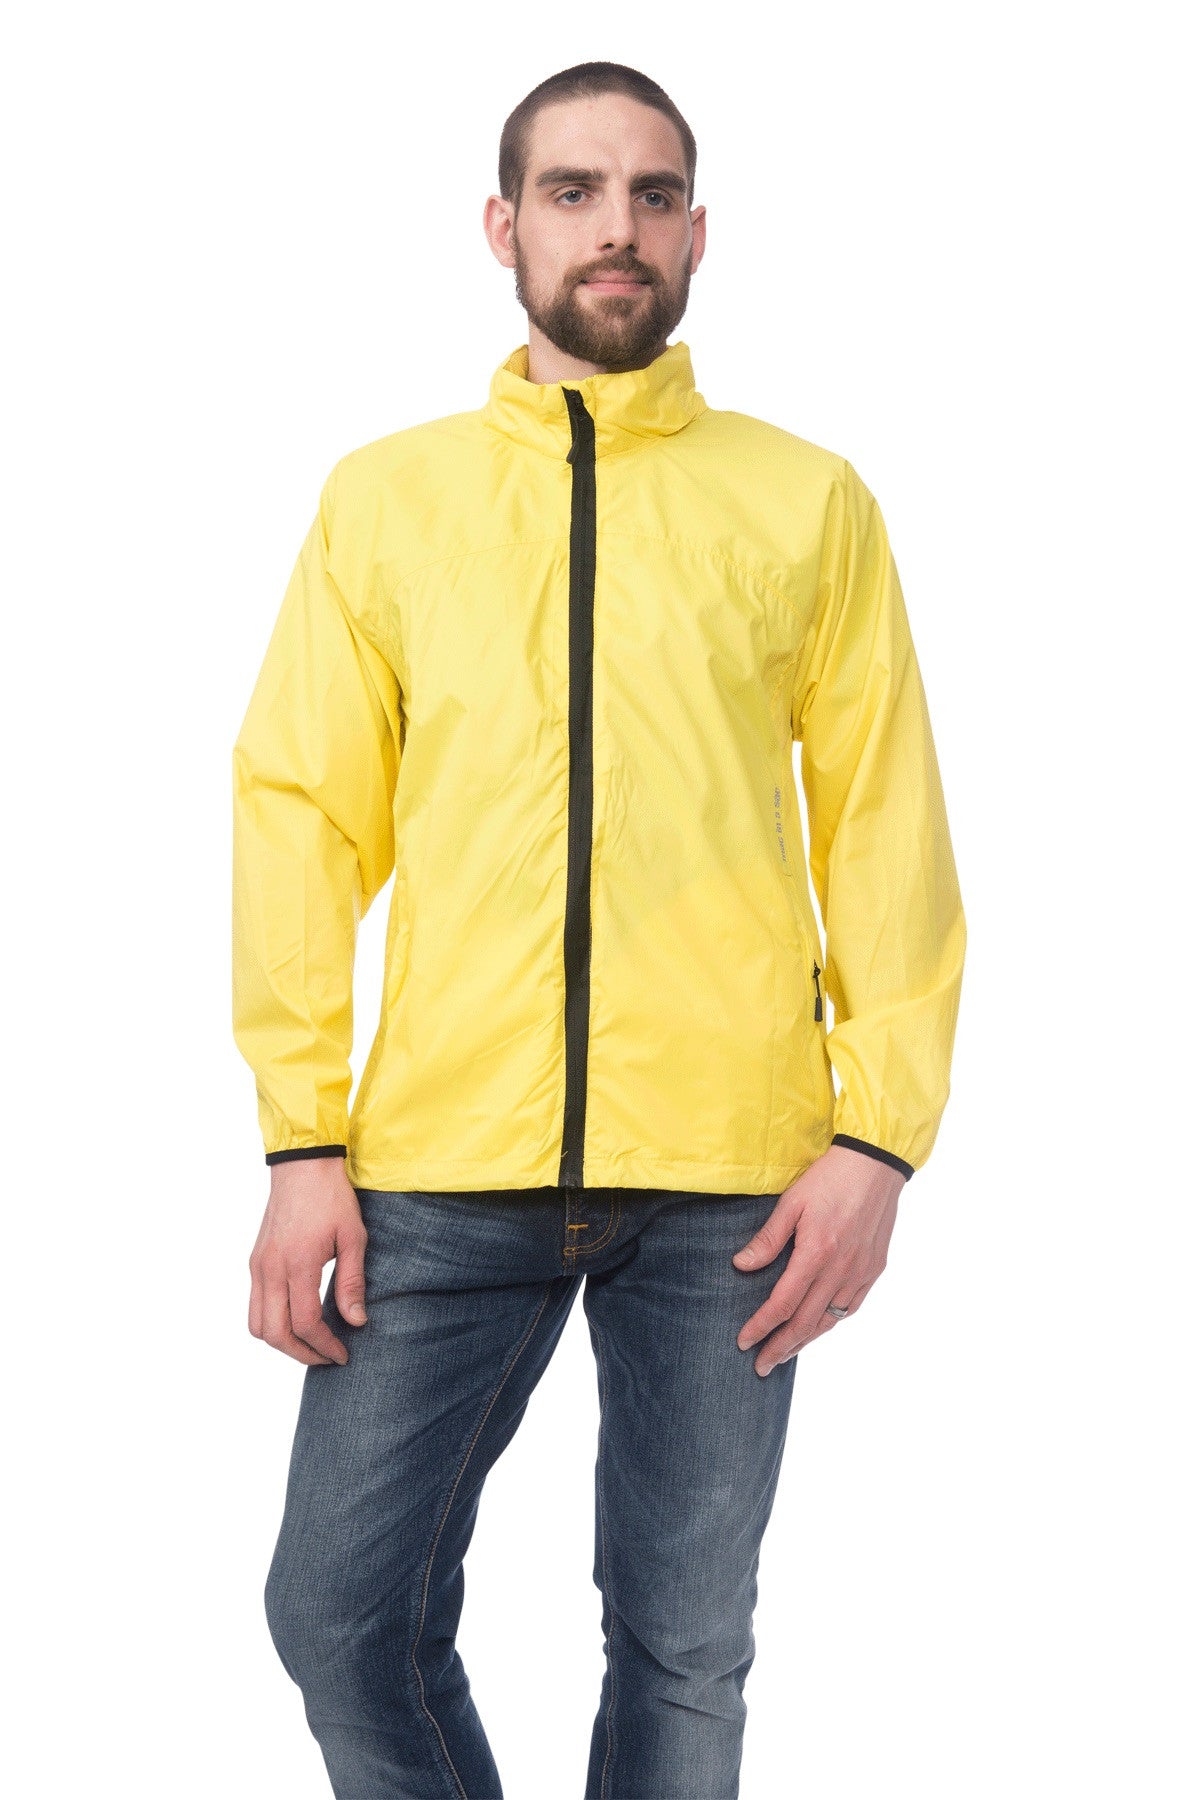 Mac in a Sac Unisex Classic Waterproof Packable Jacket | Ladies & Men's ...